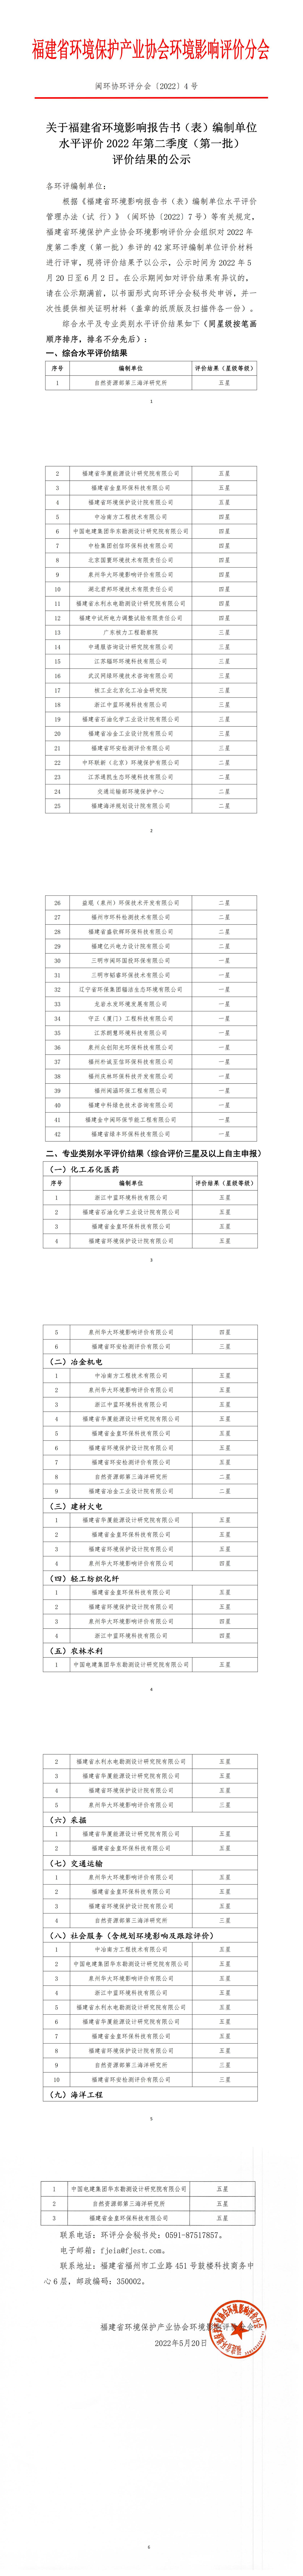 福建省环评文件编制单位水平评价2022年第二季度（第一批）评价结果的公示_00.jpg